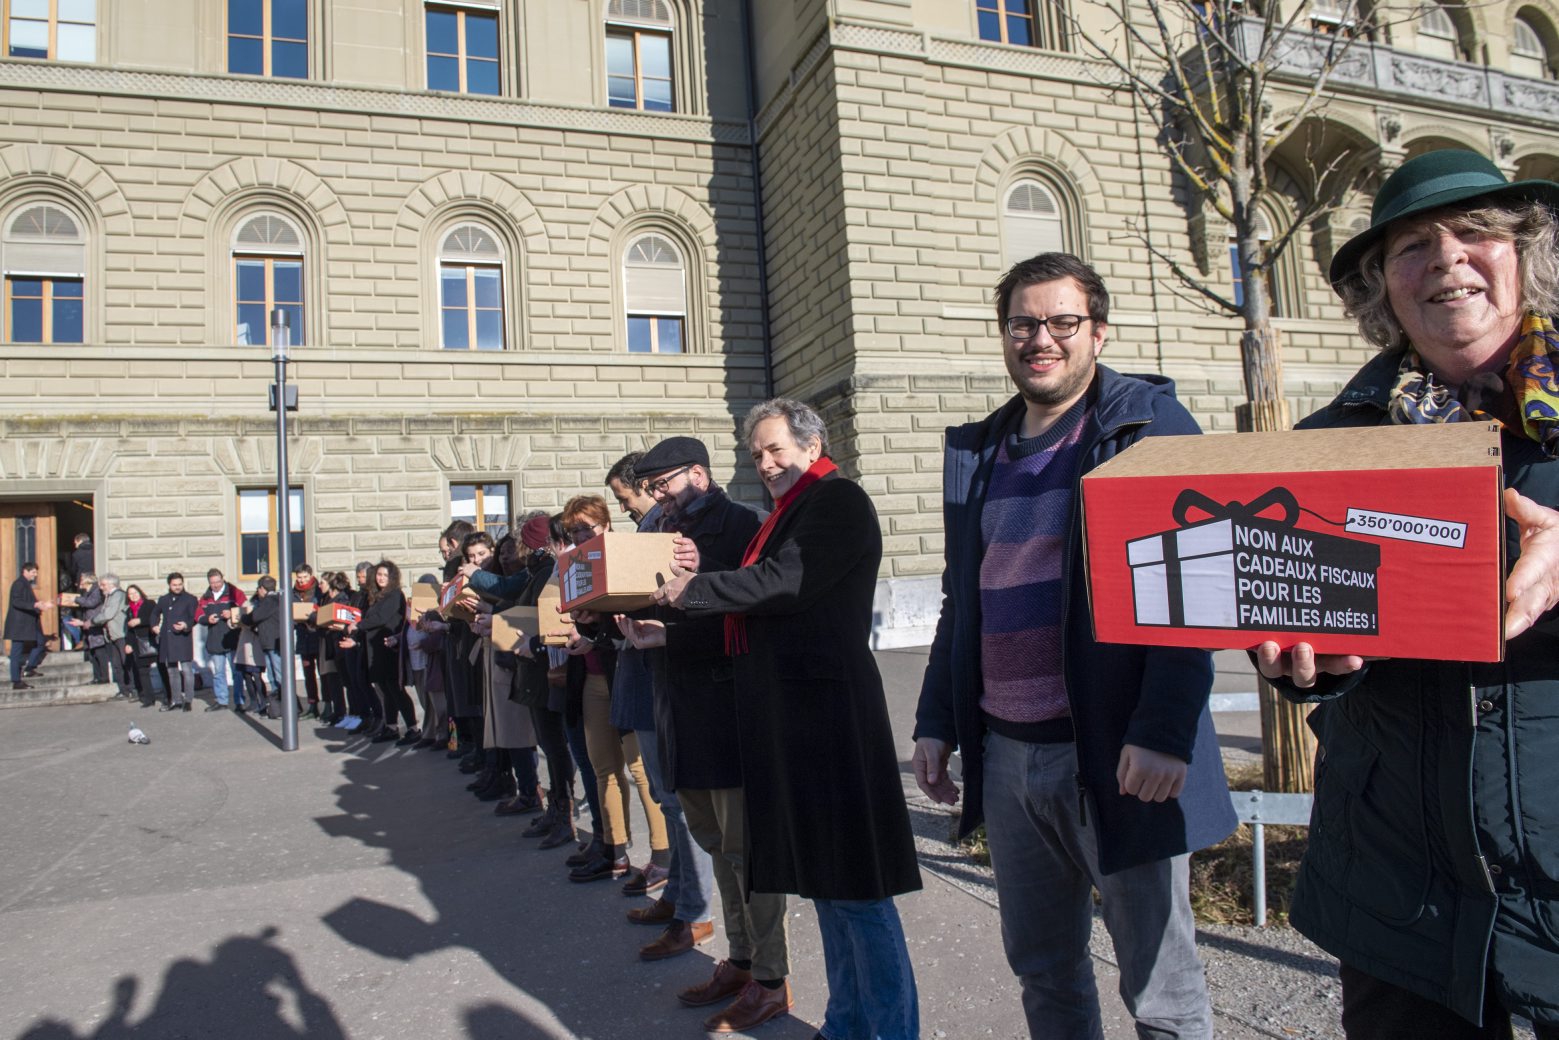 Vertreter der SP Schweiz reichen bei der Bundeskanzlei das "Reichenbonus-Referendum" gegen die Erhoehung des Kinderabzuges auf 10'000 Franken ein, am Dienstag, 13. Januar 2020, in Bern. (KEYSTONE/Marcel Bieri) SCHWEIZ REFERENDUM REICHENBONUS